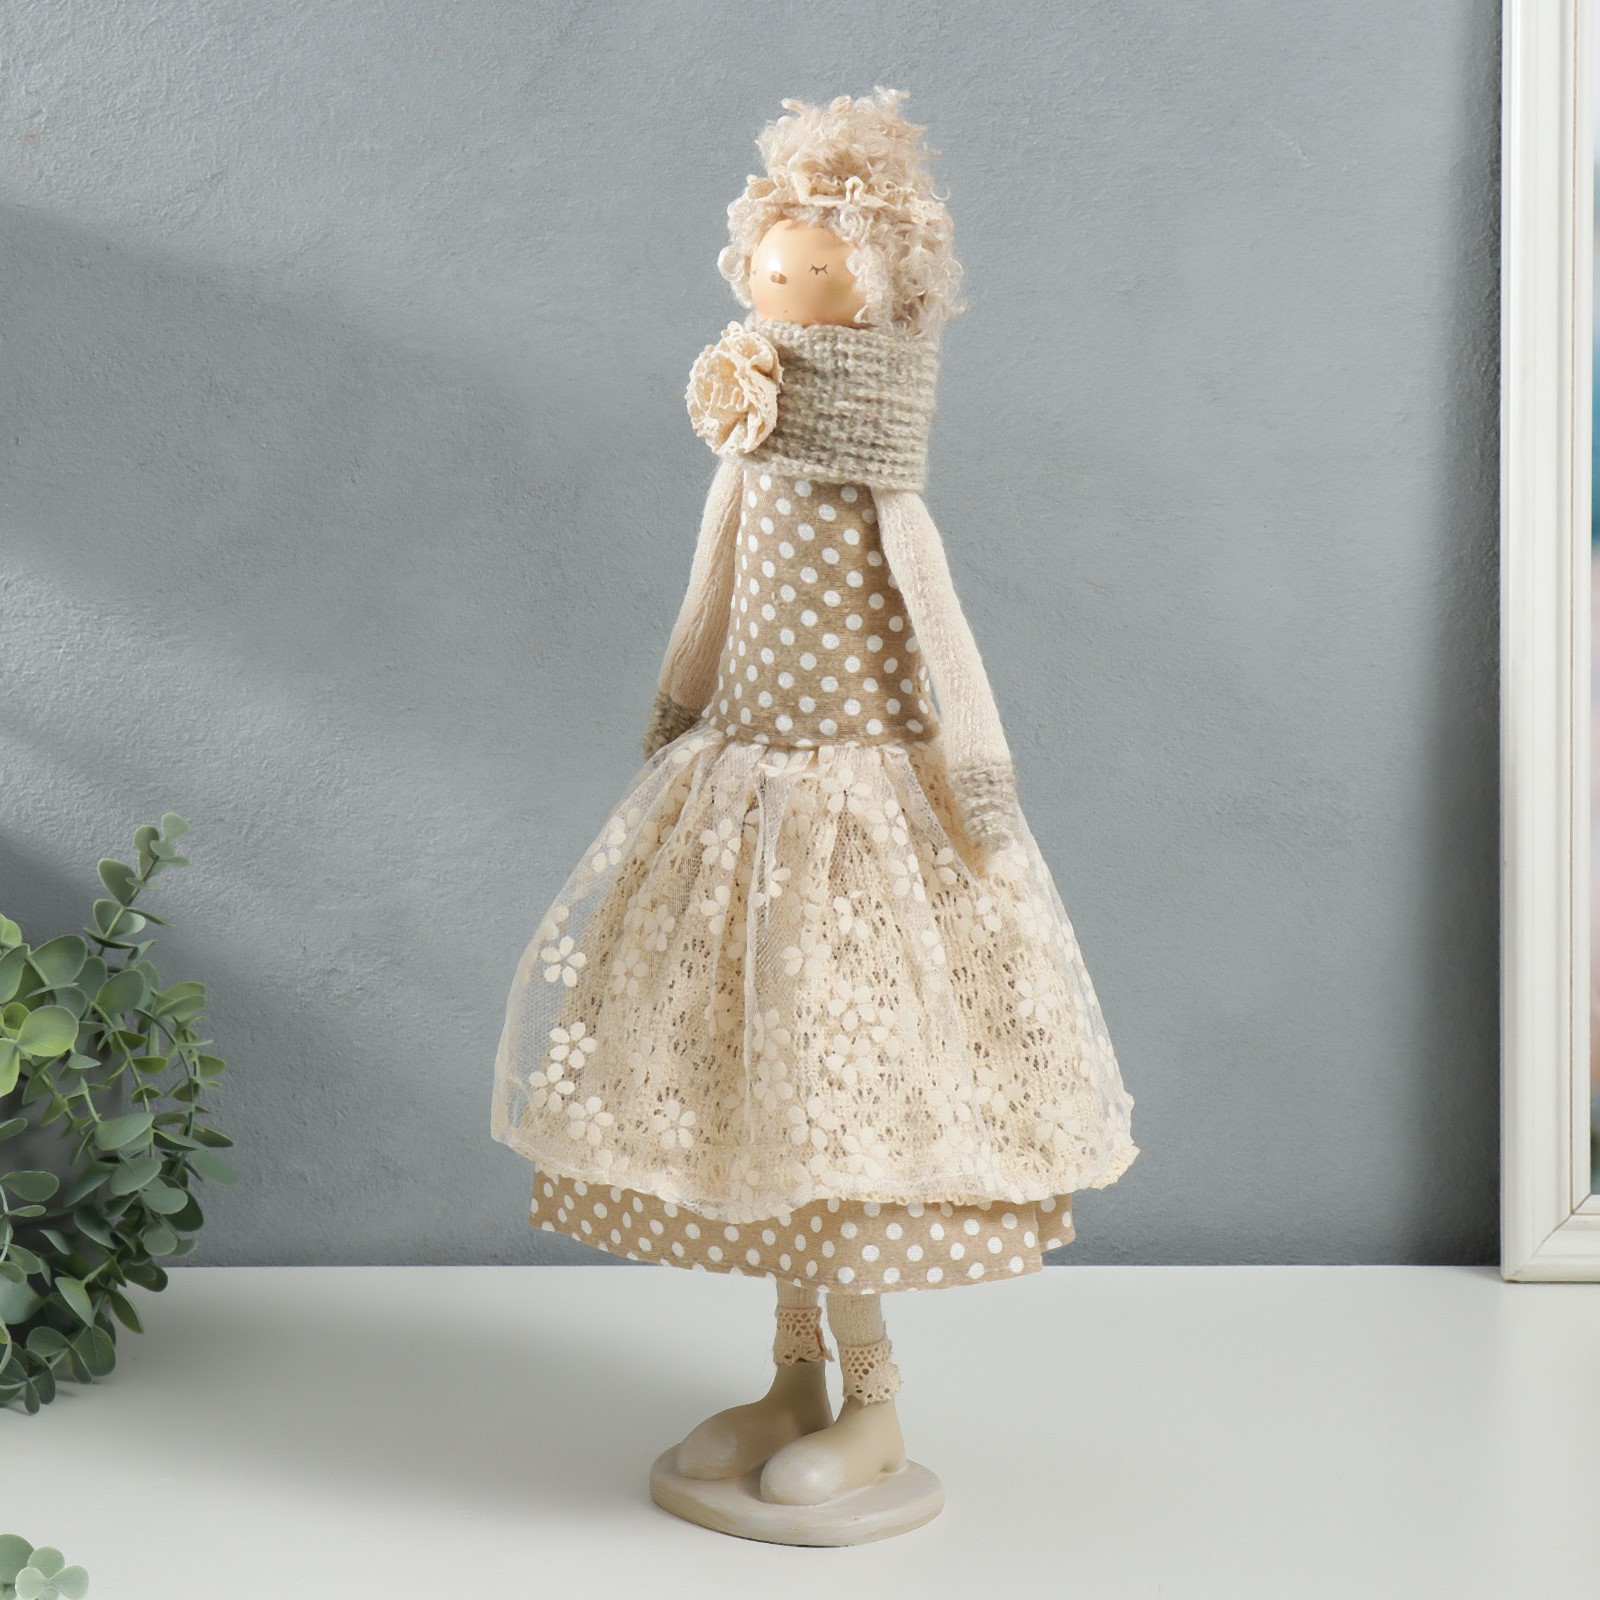 Кукла интерьерная Зимнее волшебство «Девушка с кудряшками платье в горох с сердцем» 48 5х14х17 см - фото 4